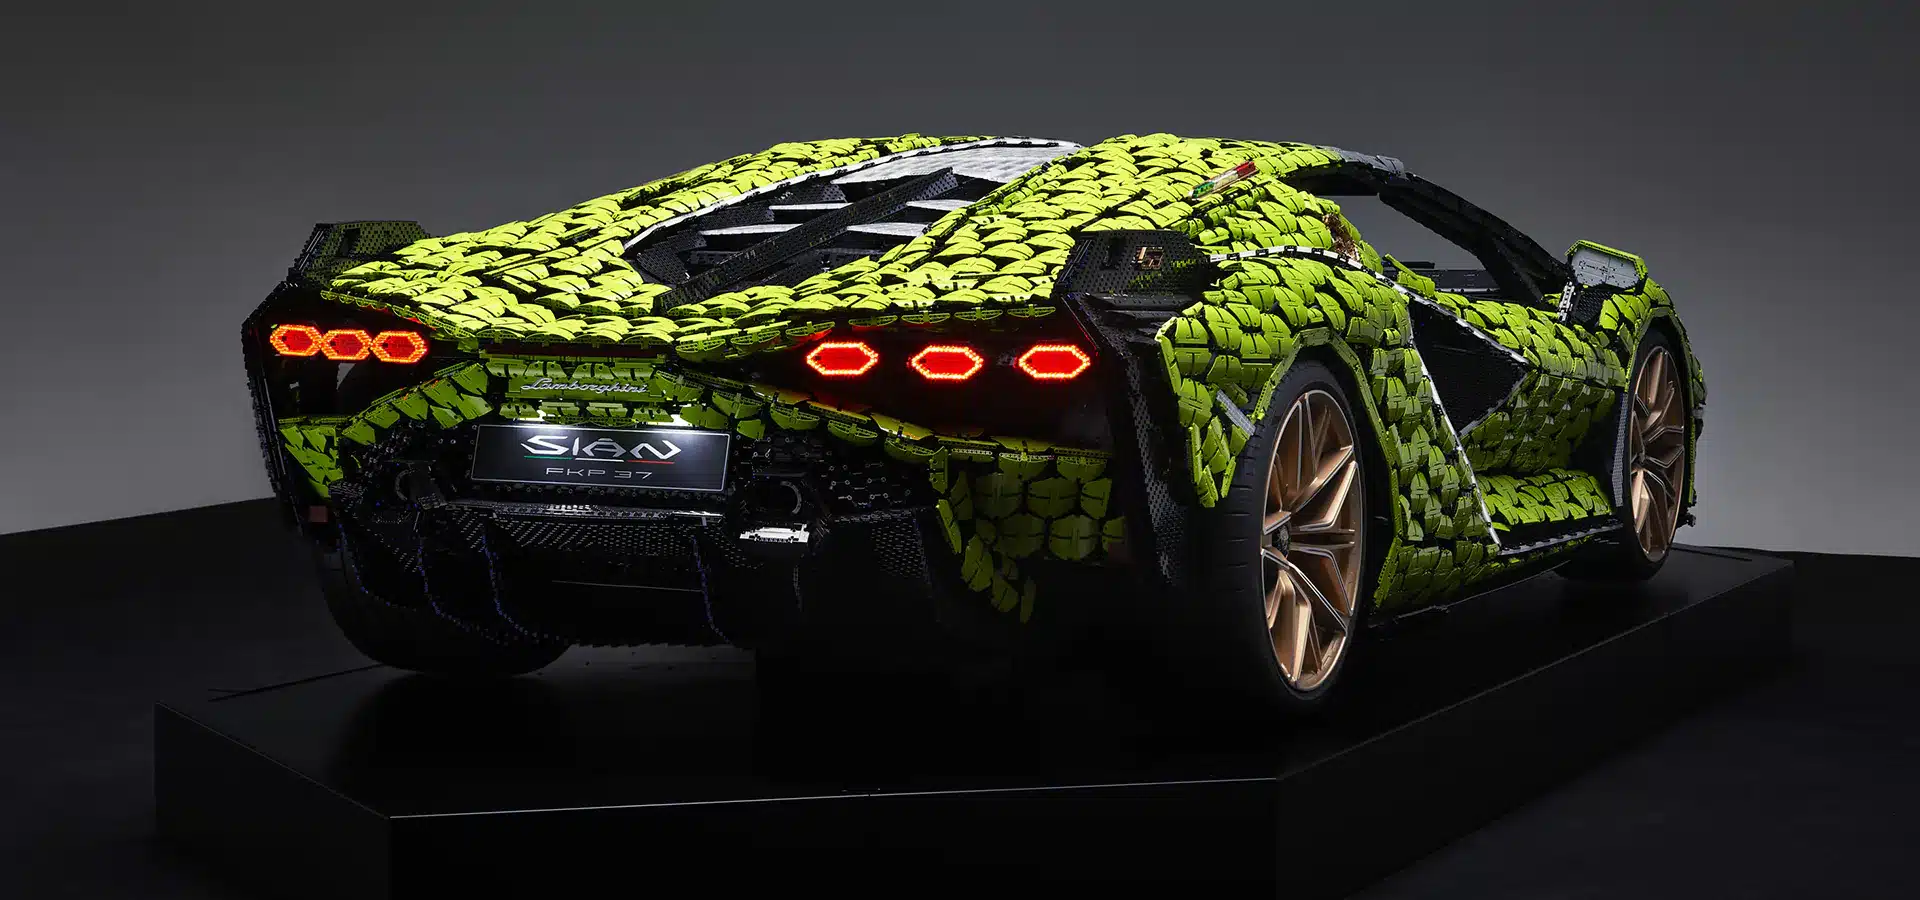 The rear of the Lego Lamborghini Sian.